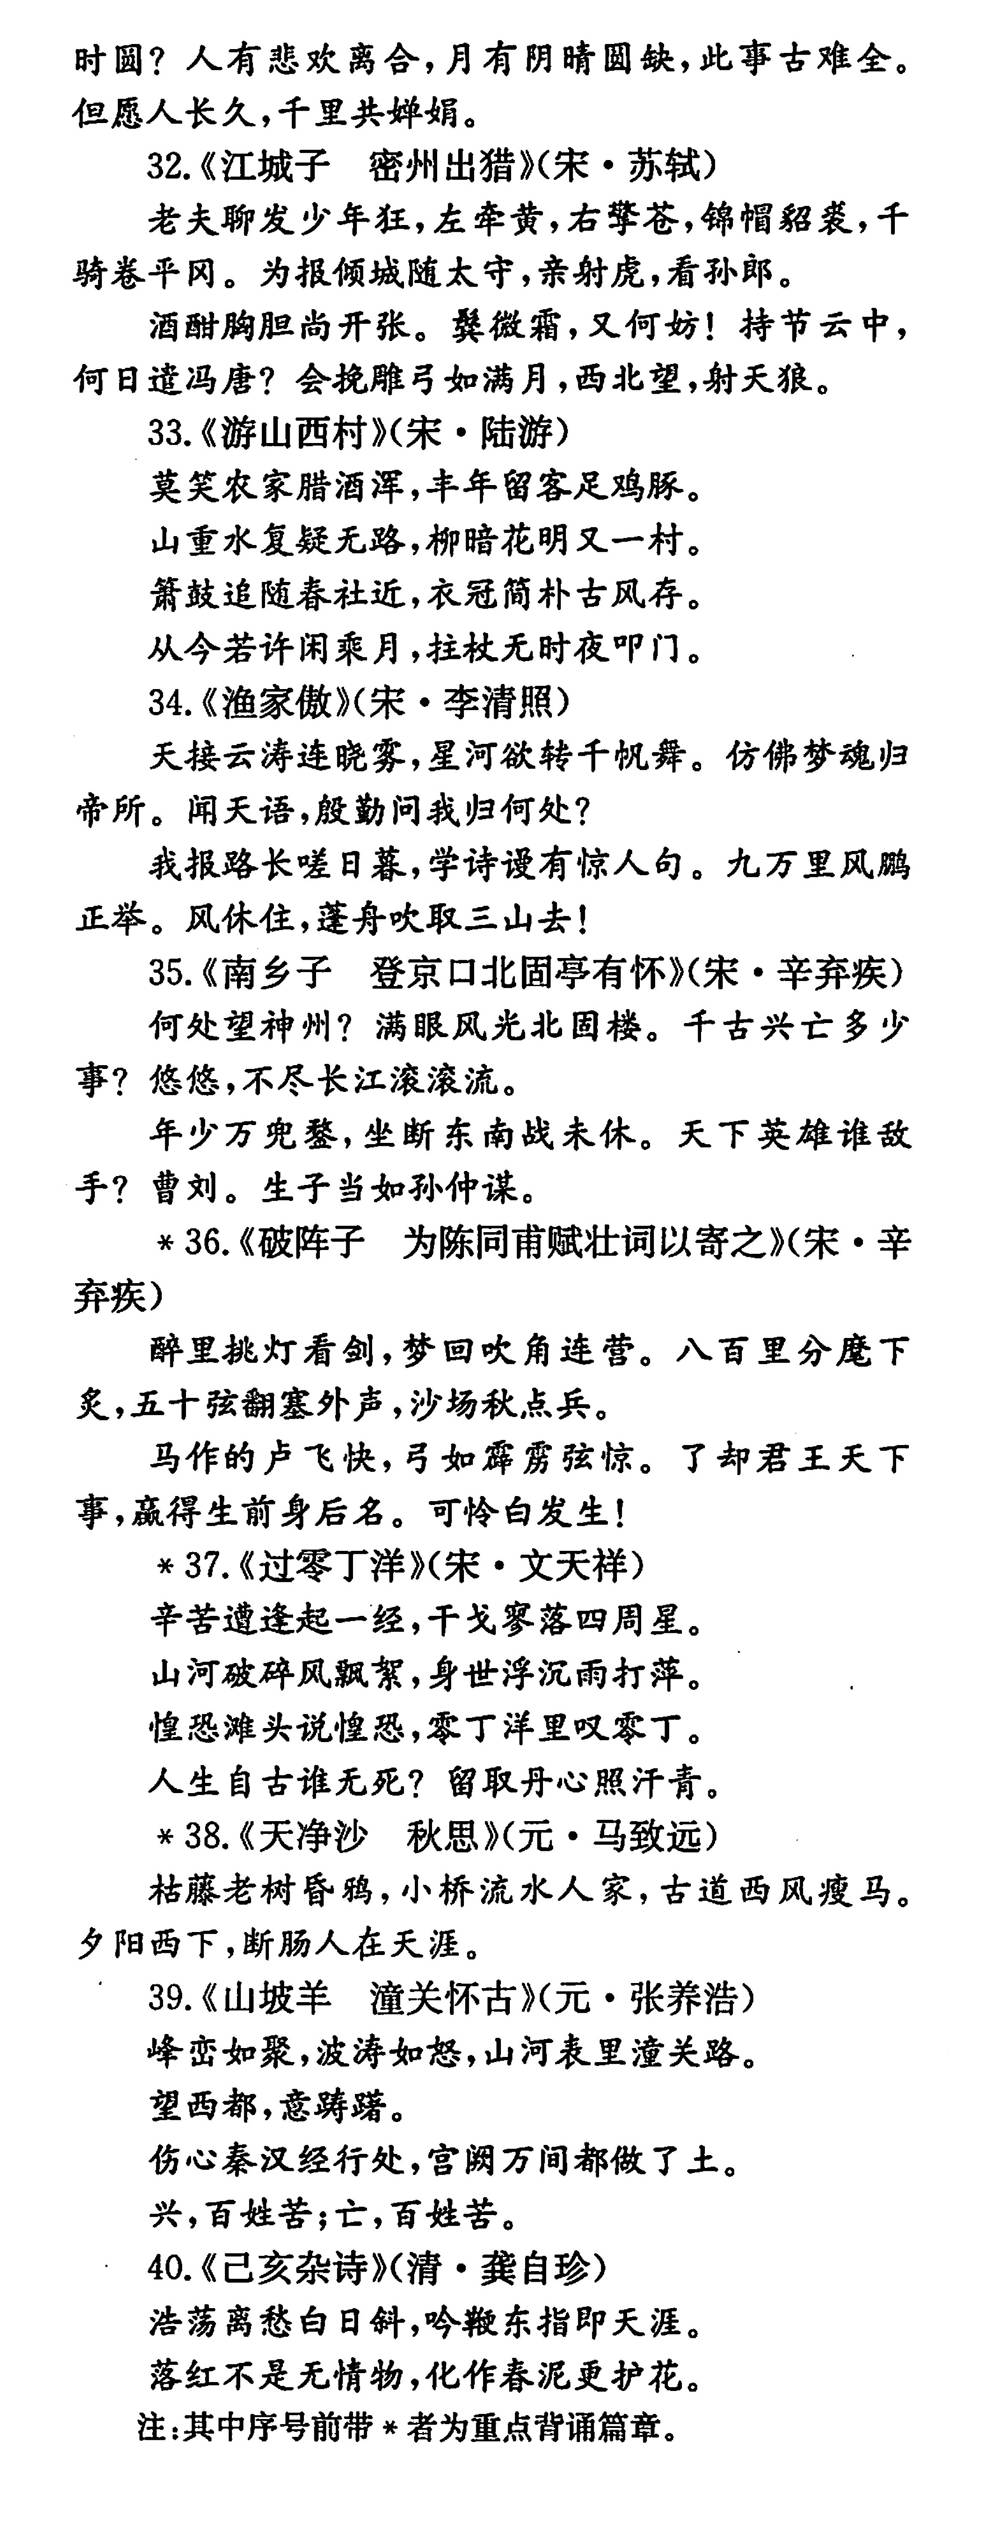 北京中考要求背诵的古诗文篇目